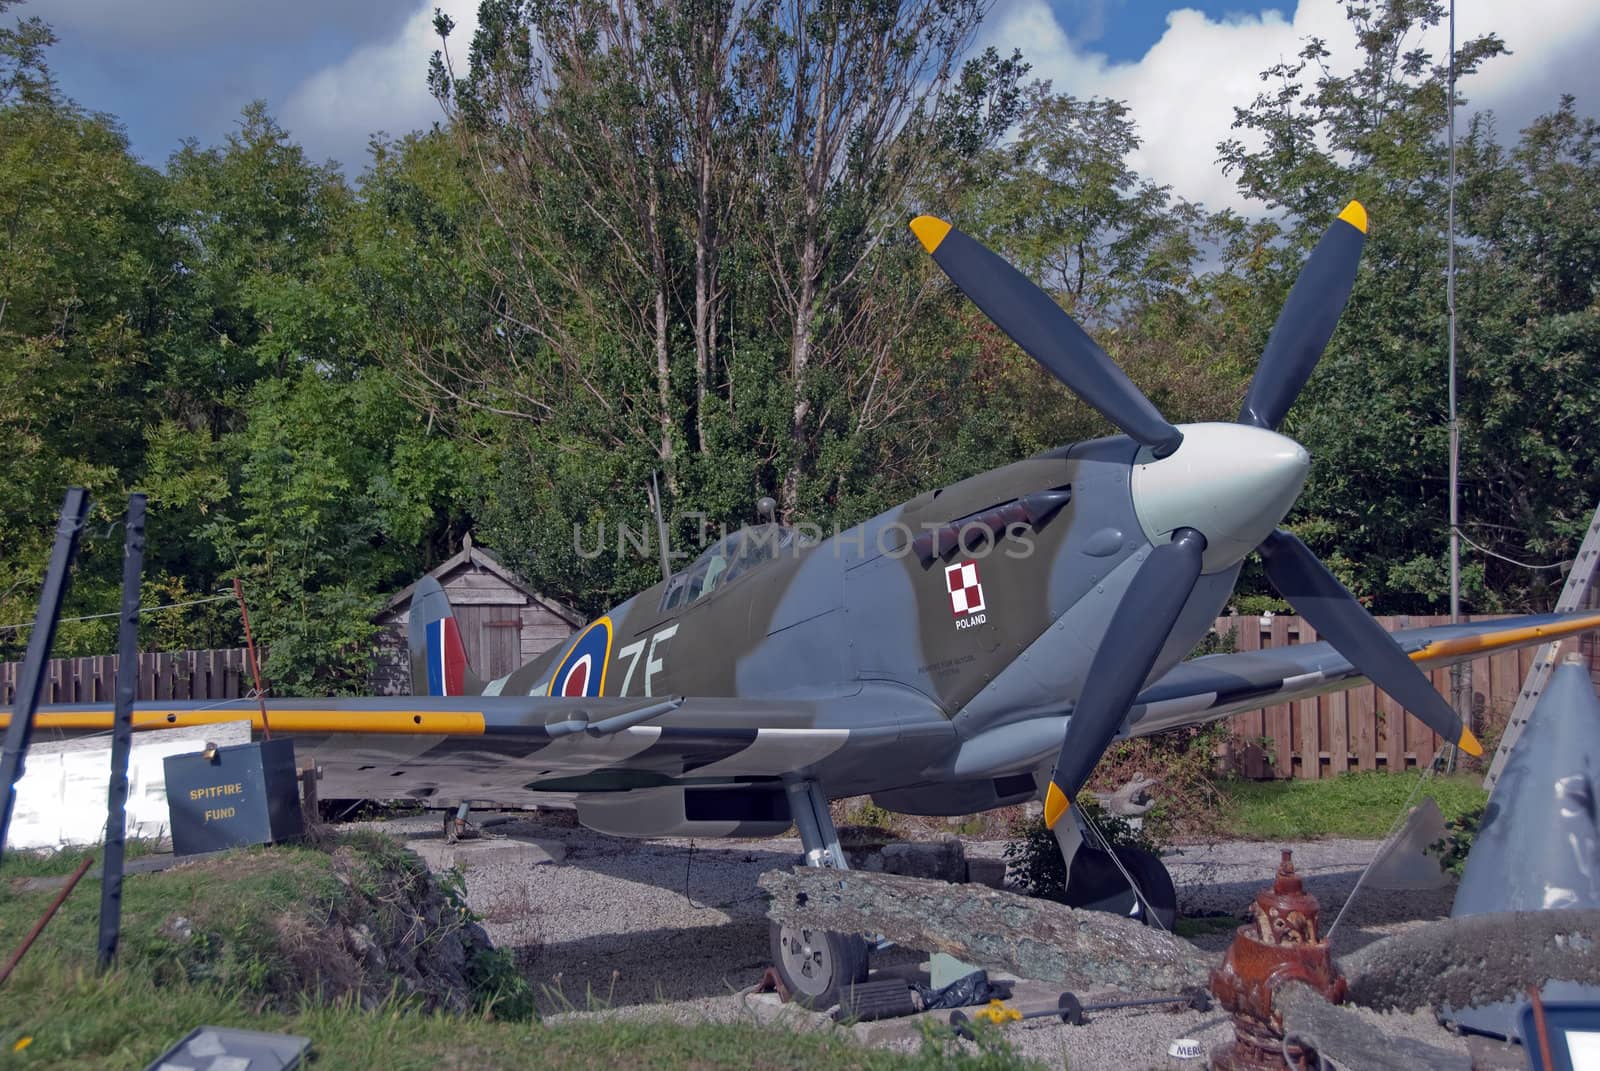 Spitfire Replica in Polish Squadron Livery